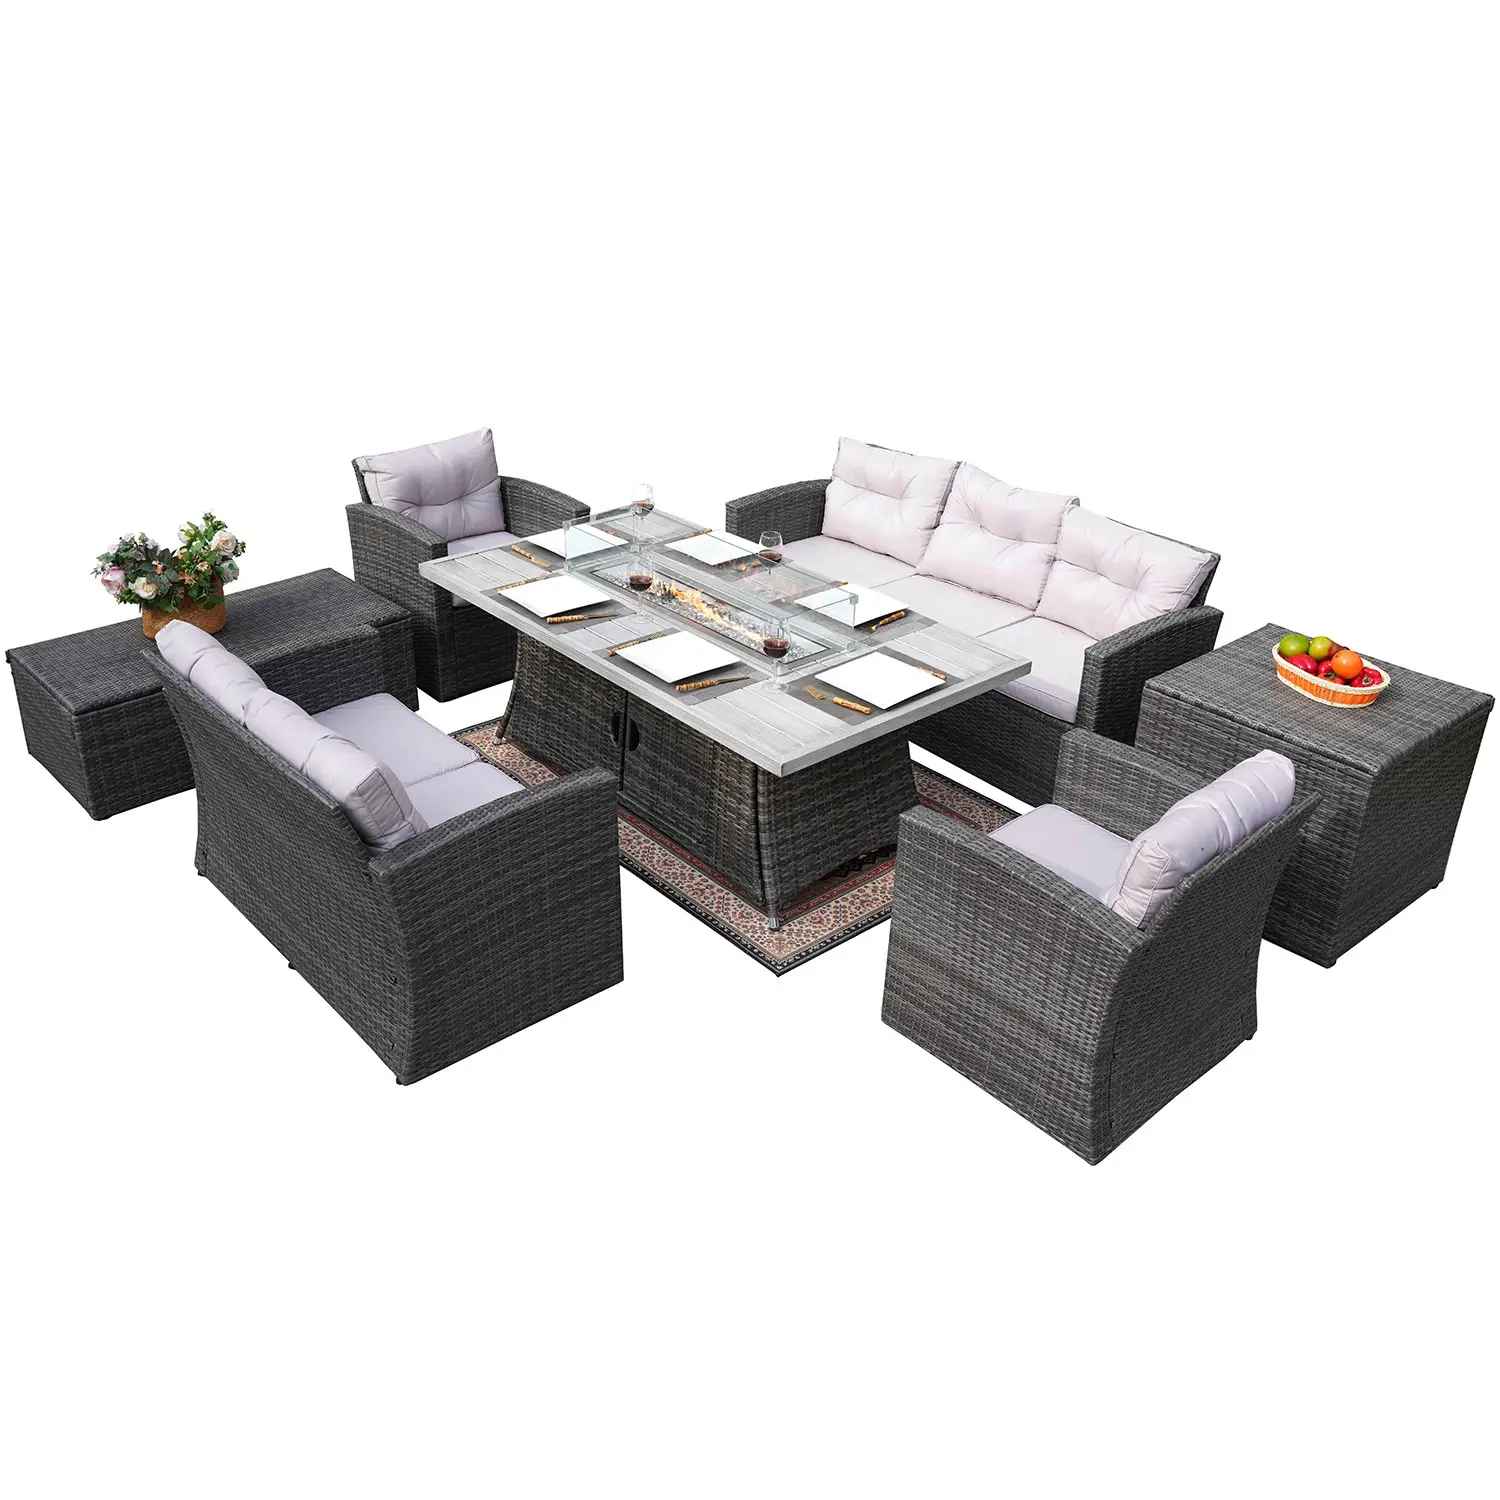 長方形ファイヤーピットテーブル付き高品質屋外籐ソファセットガーデンソファ籐家具